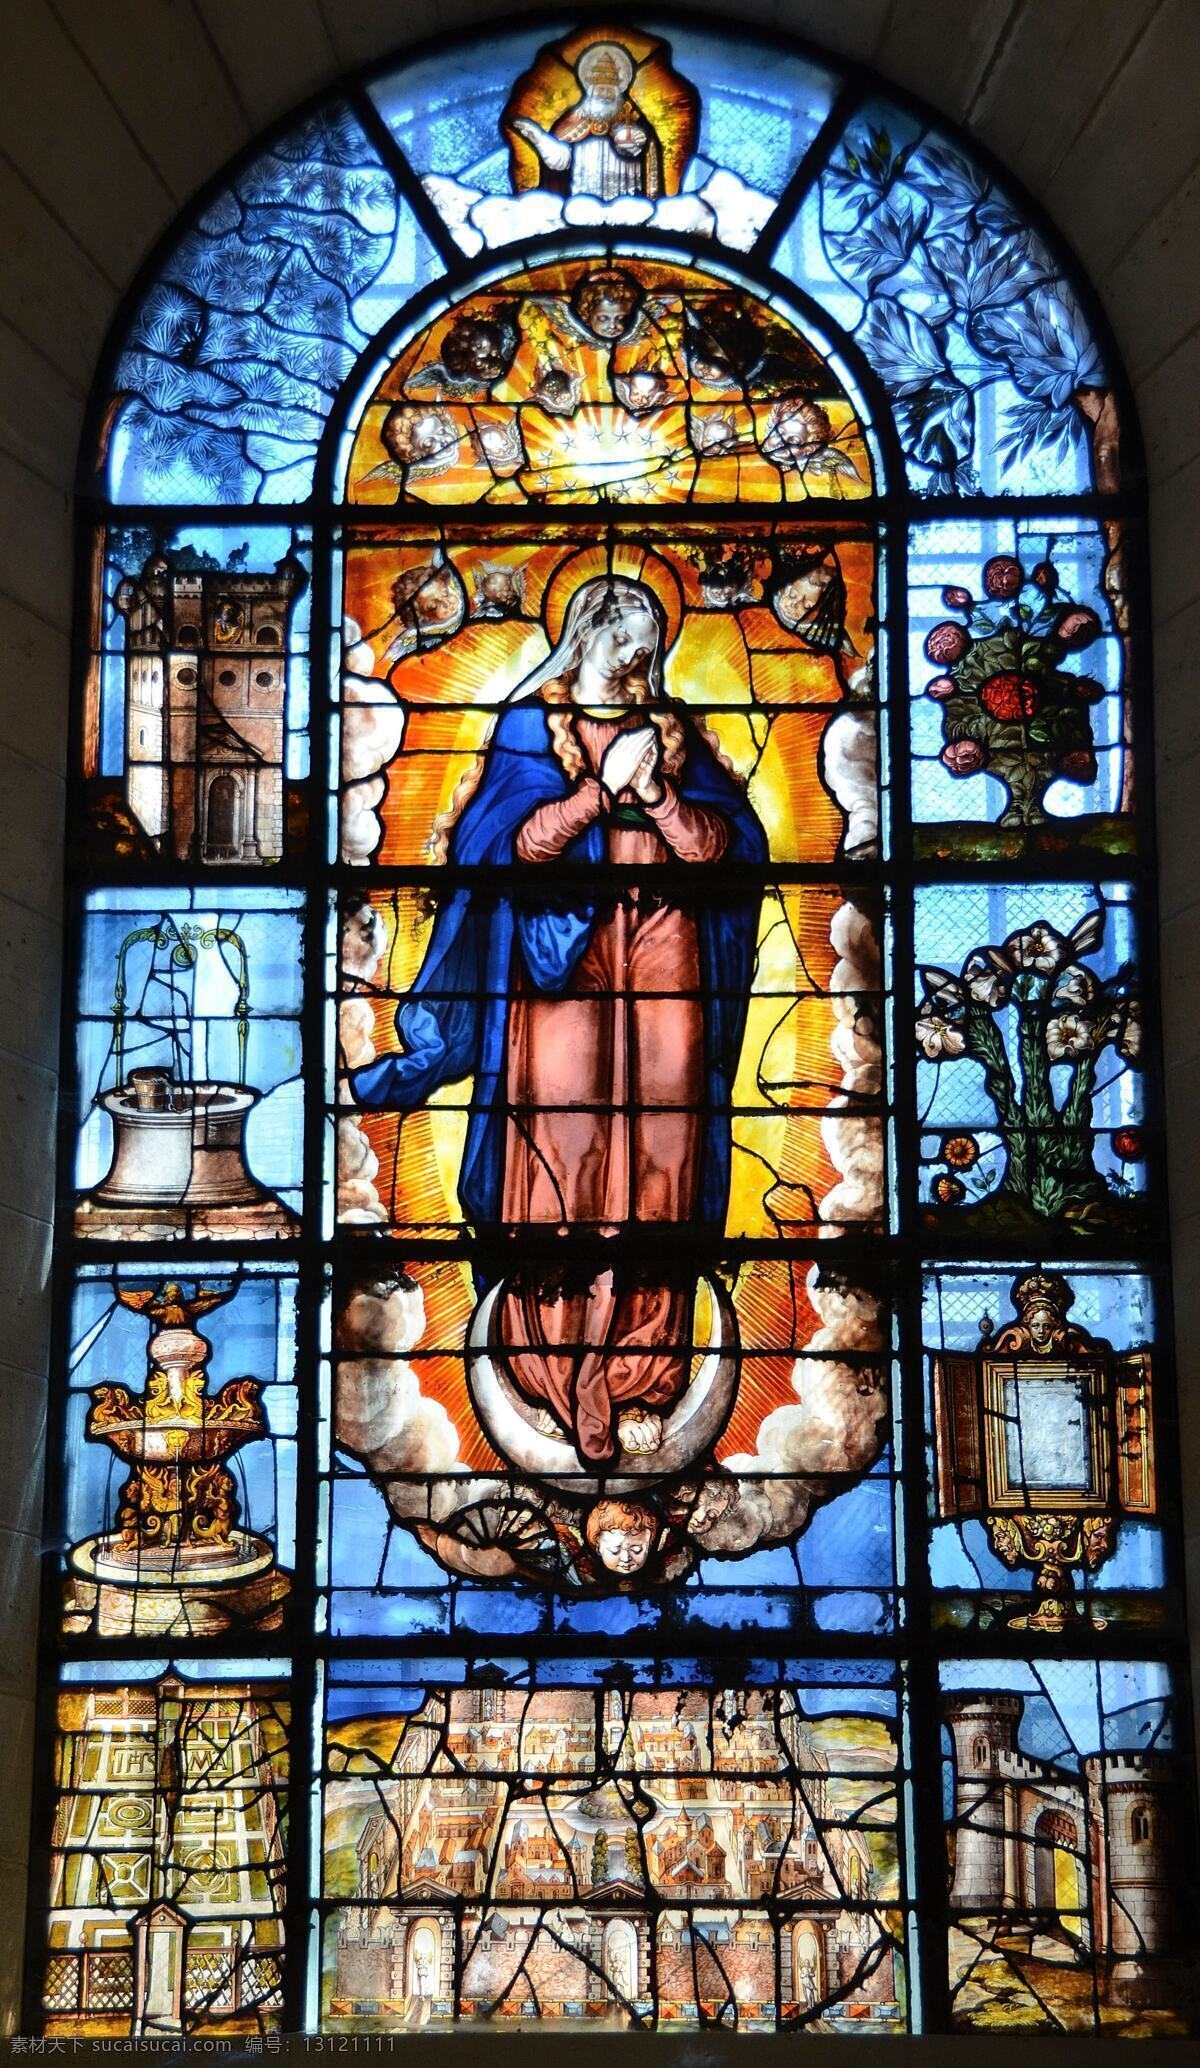 基督教堂玻璃 基督教 十字架 基督 耶稣 神 神灵 信仰 信念 圣母 窗 文化艺术 宗教信仰